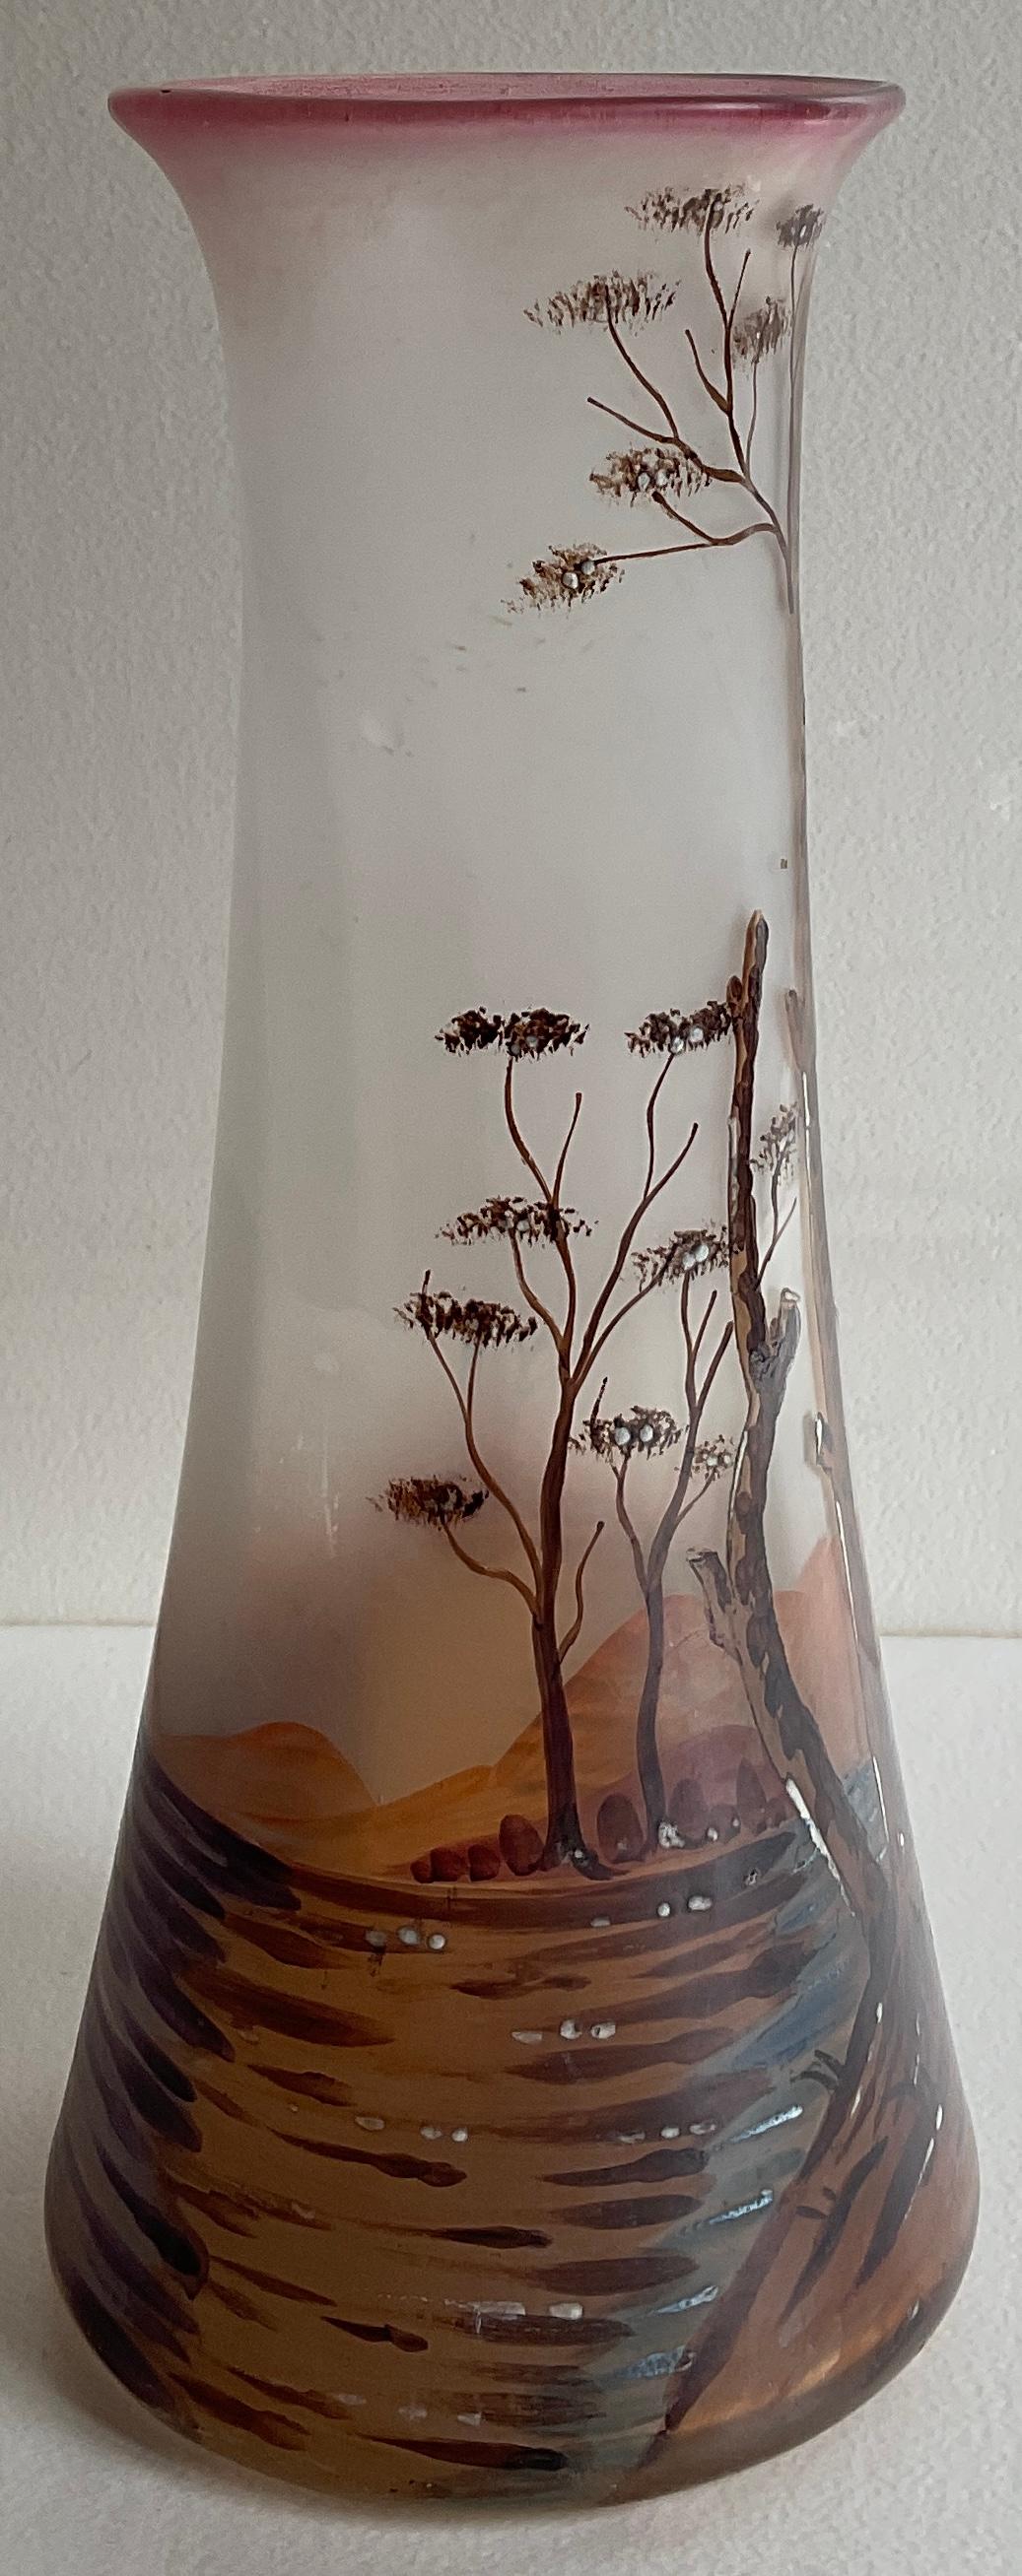 Un beau vase en verre émaillé français de la période Art Nouveau, vers 1930.  L'œuvre, très détaillée, est de François-Théodore Legras.

Le tube de ce vase est agrandi et a un fond rose foncé. Il est décoré d'arbres, d'un oiseau, de plantes et